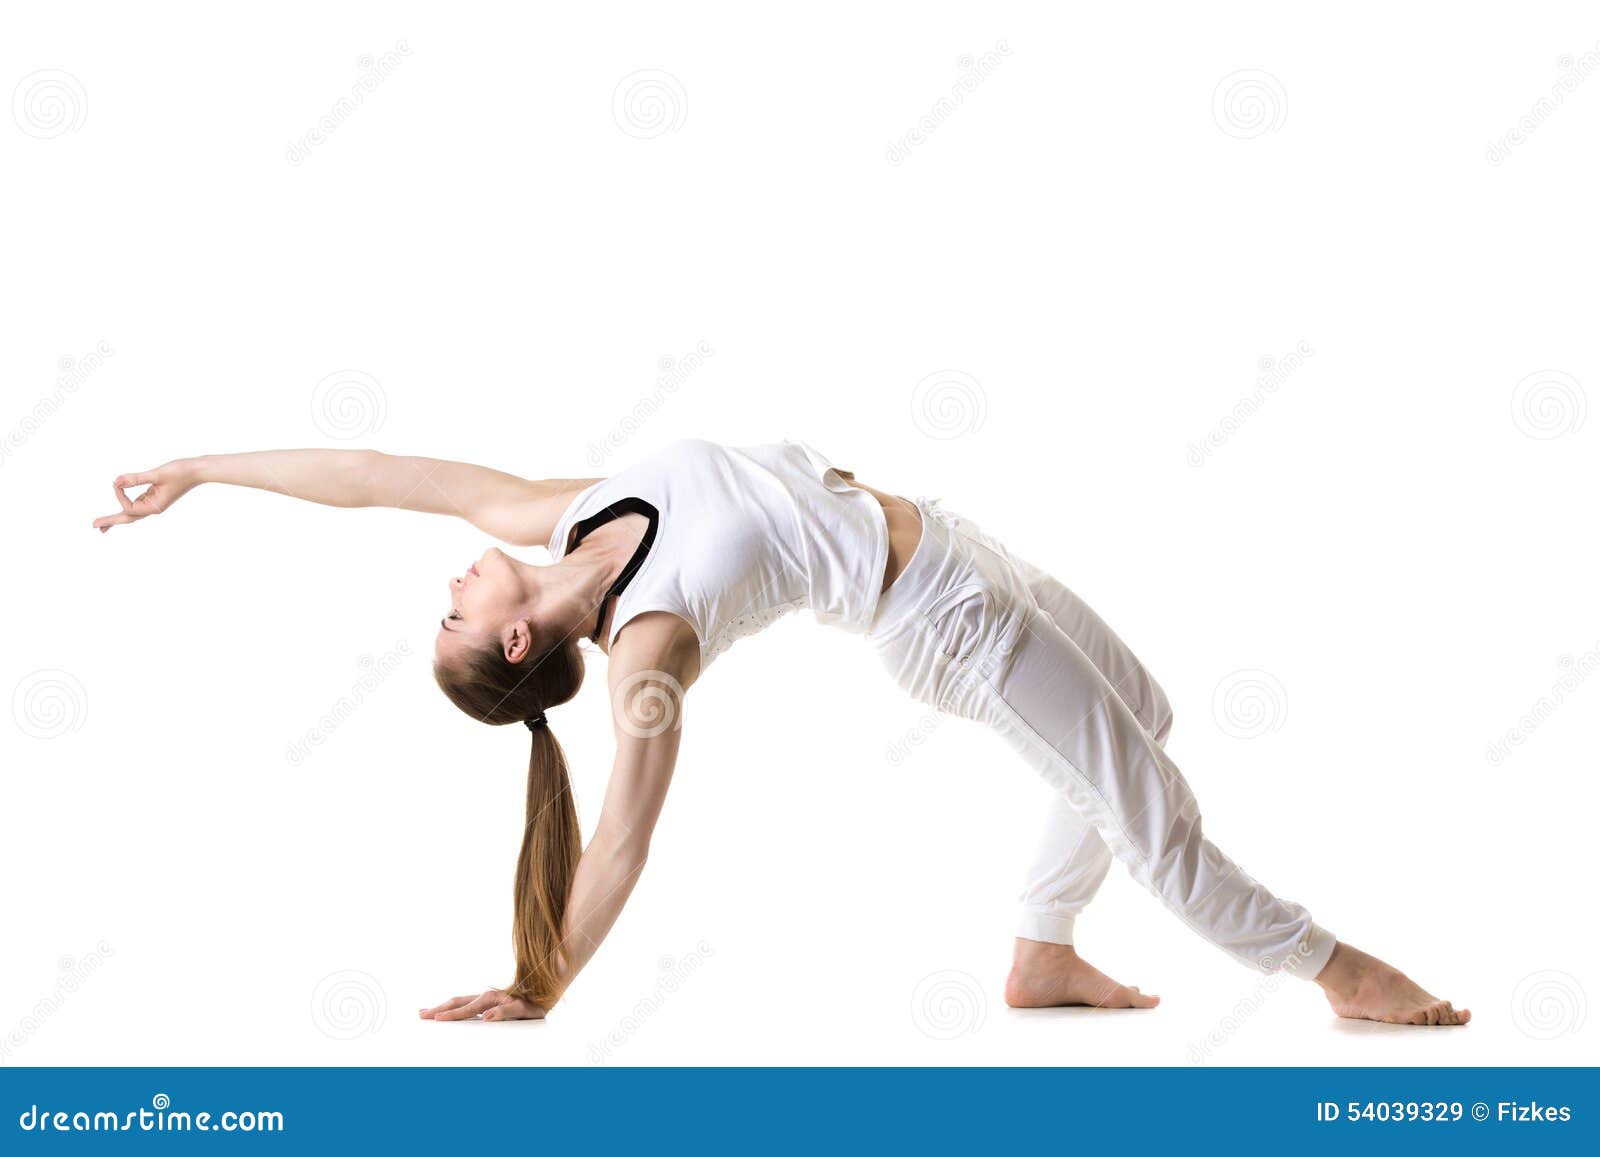 119 Wild Thing Yoga Pose Stock Photos - Free & Royalty-Free Stock